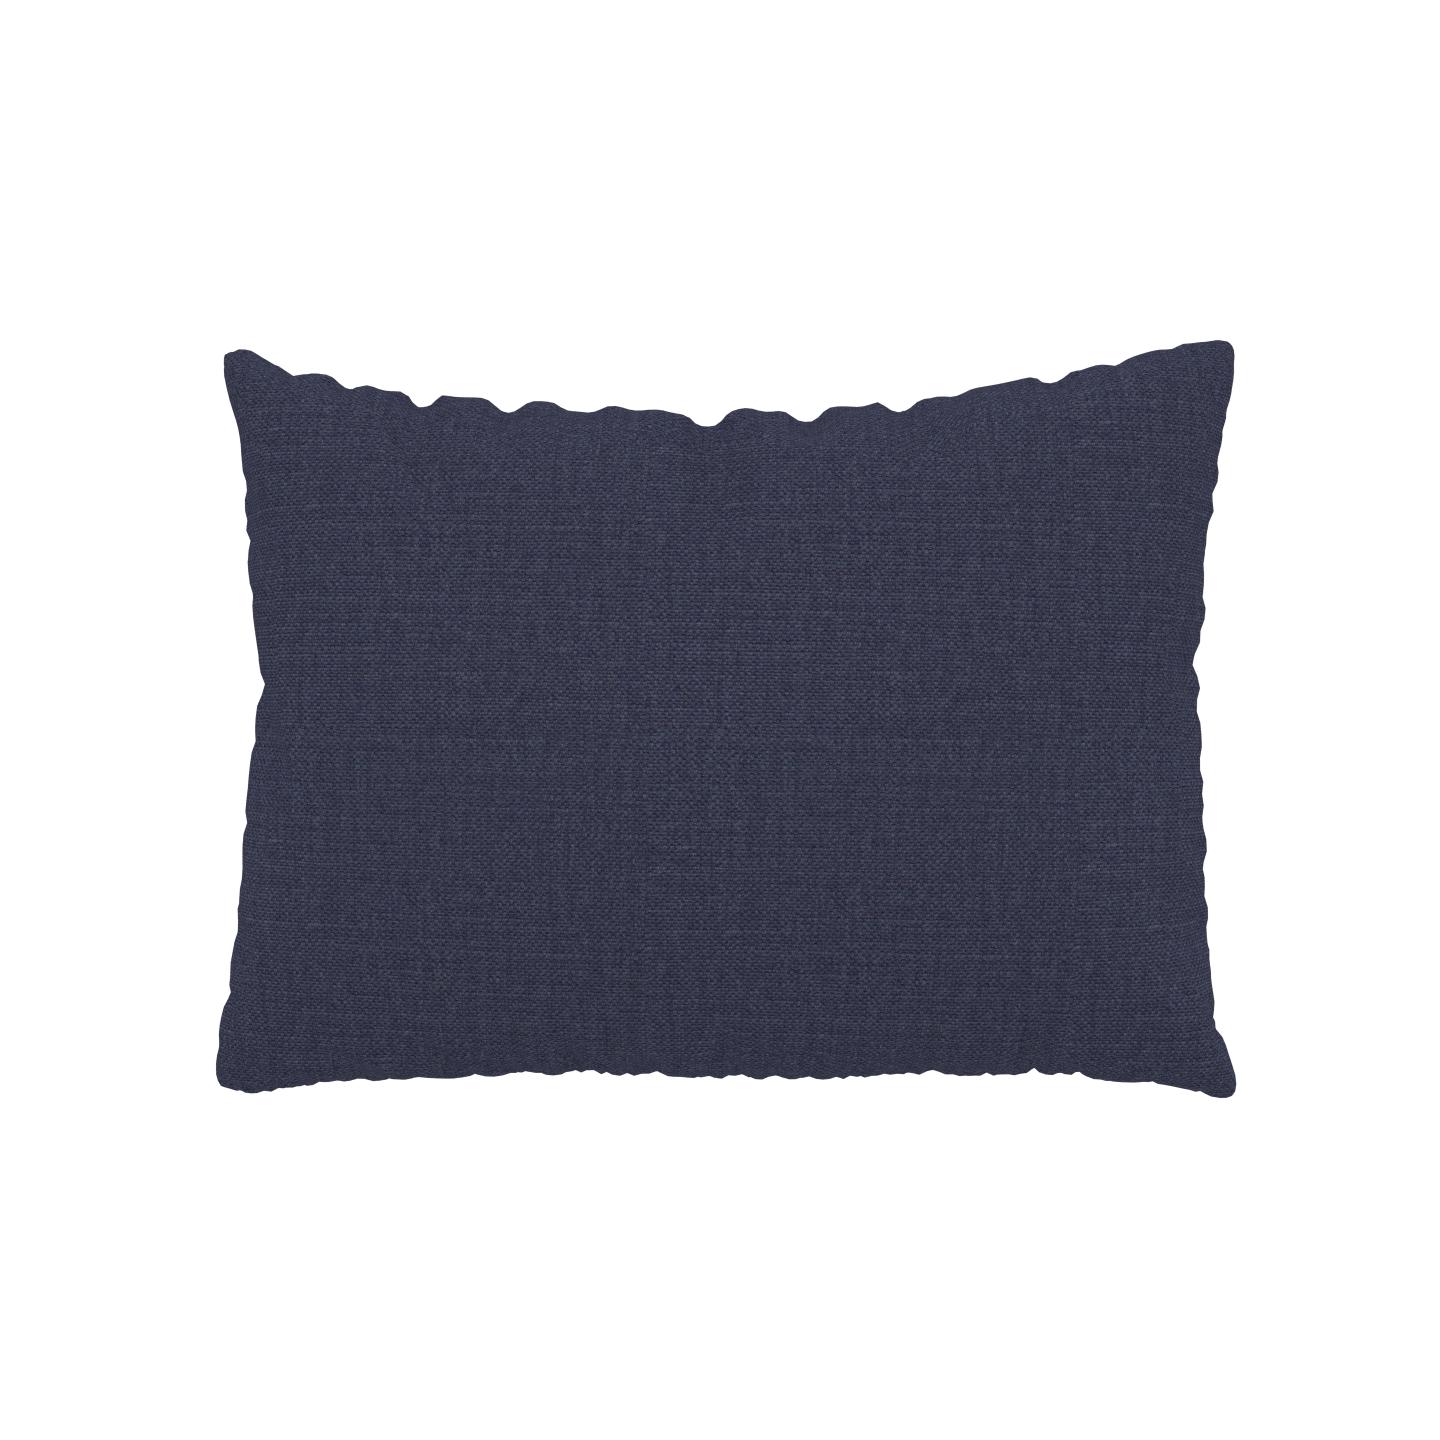 MYCS Coussin Bleu Denim - 48x65 cm - Housse en Textile tissé. Coussin de canapé moelleux